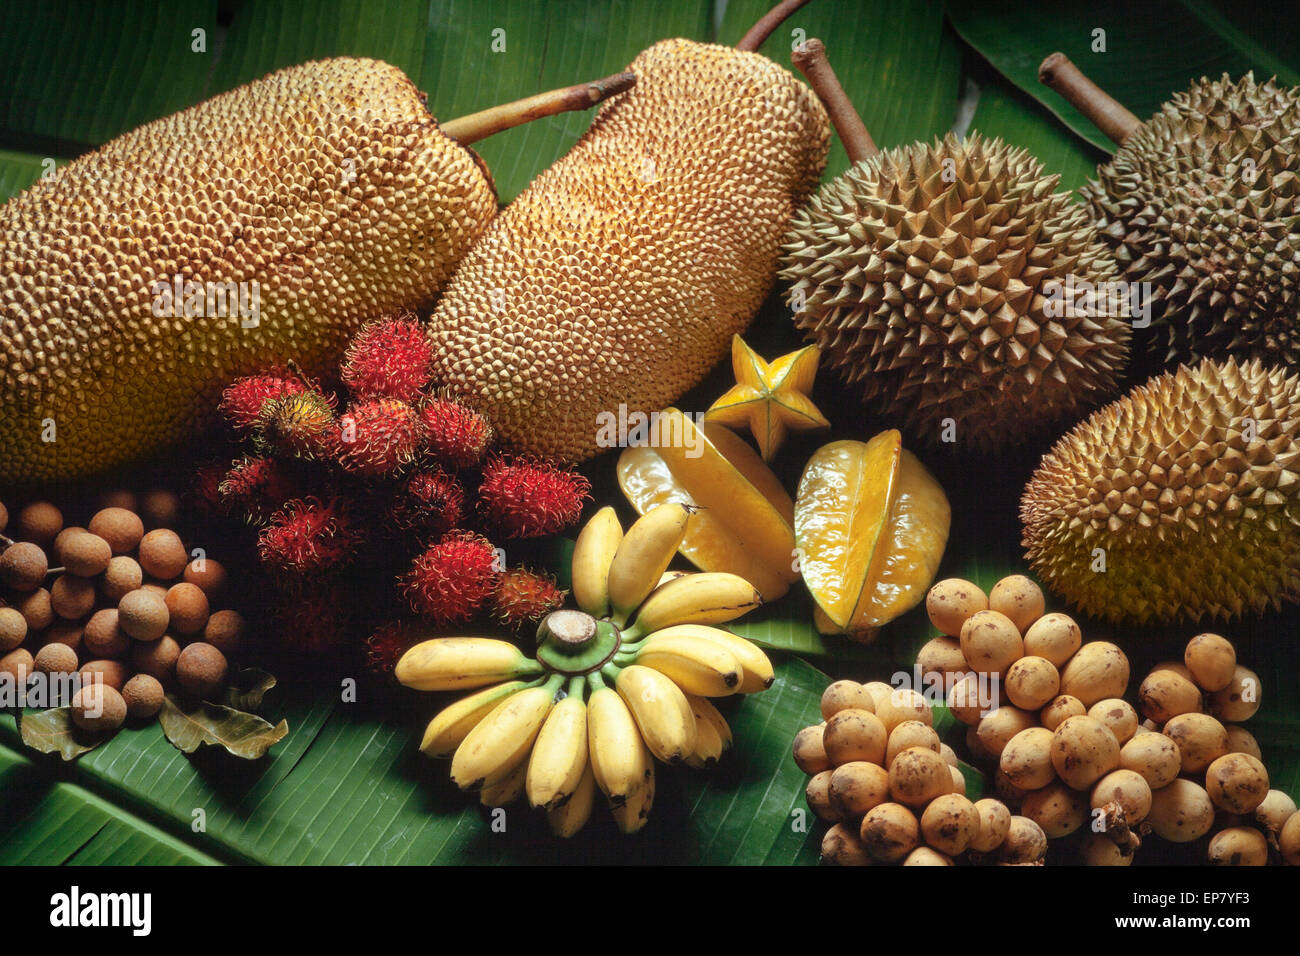 La variedad de frutas tropicales, Malasia; Durian, plátano, frutas estrella, rambutan, jaqueiras, longan, mata kuching Foto de stock